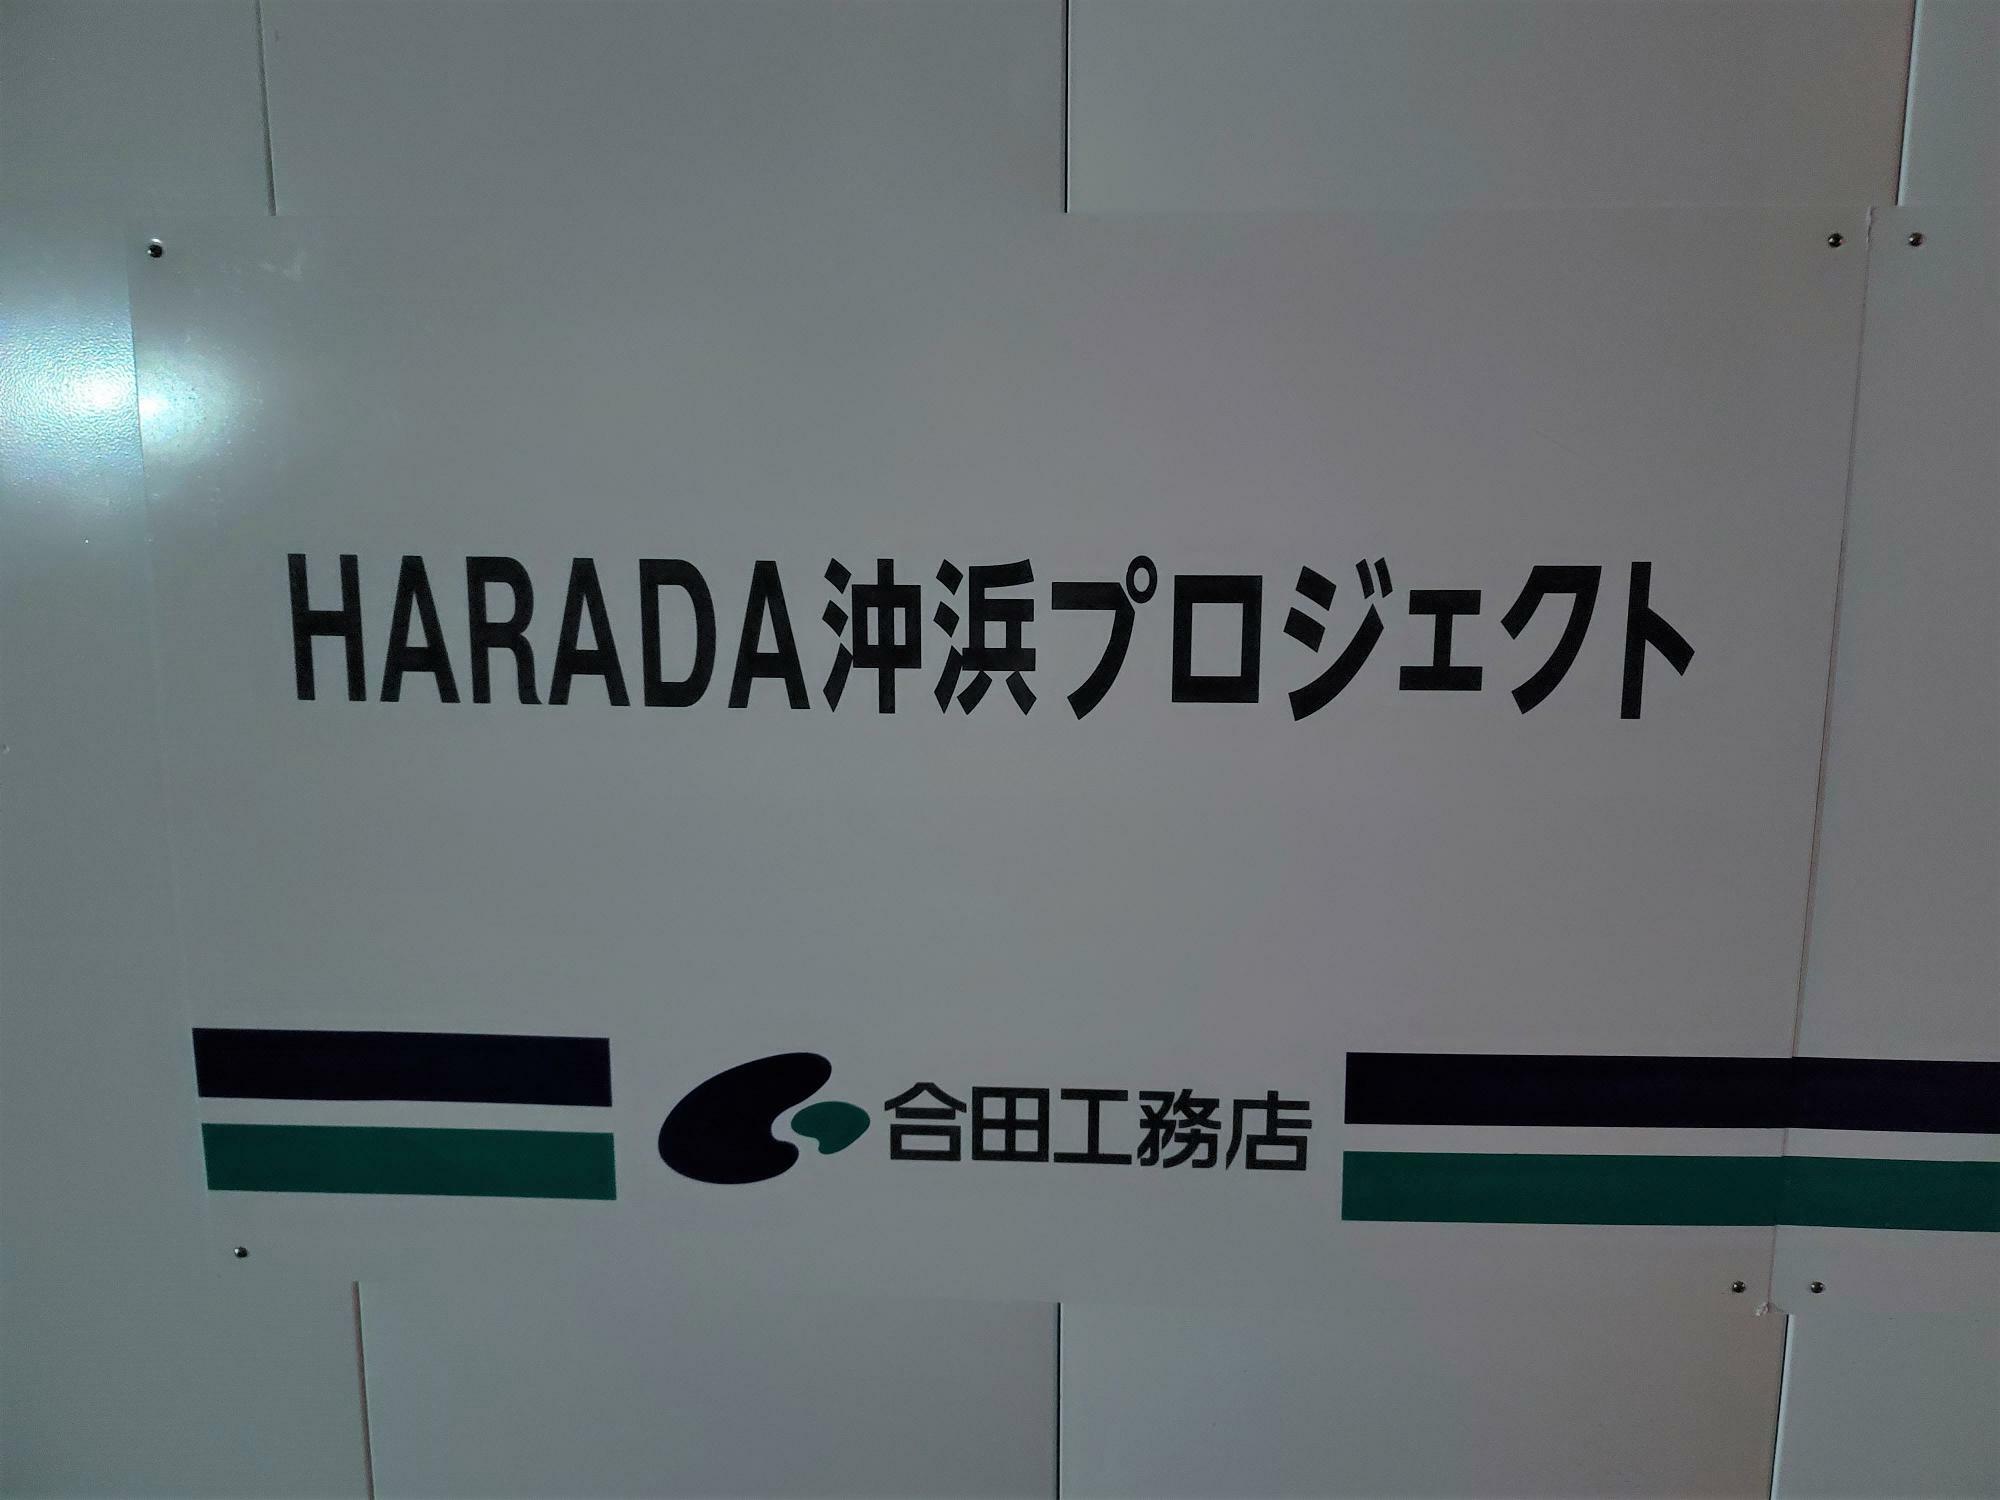 工事現場に設置されていた「HARADA 沖浜プロジェクト」の看板